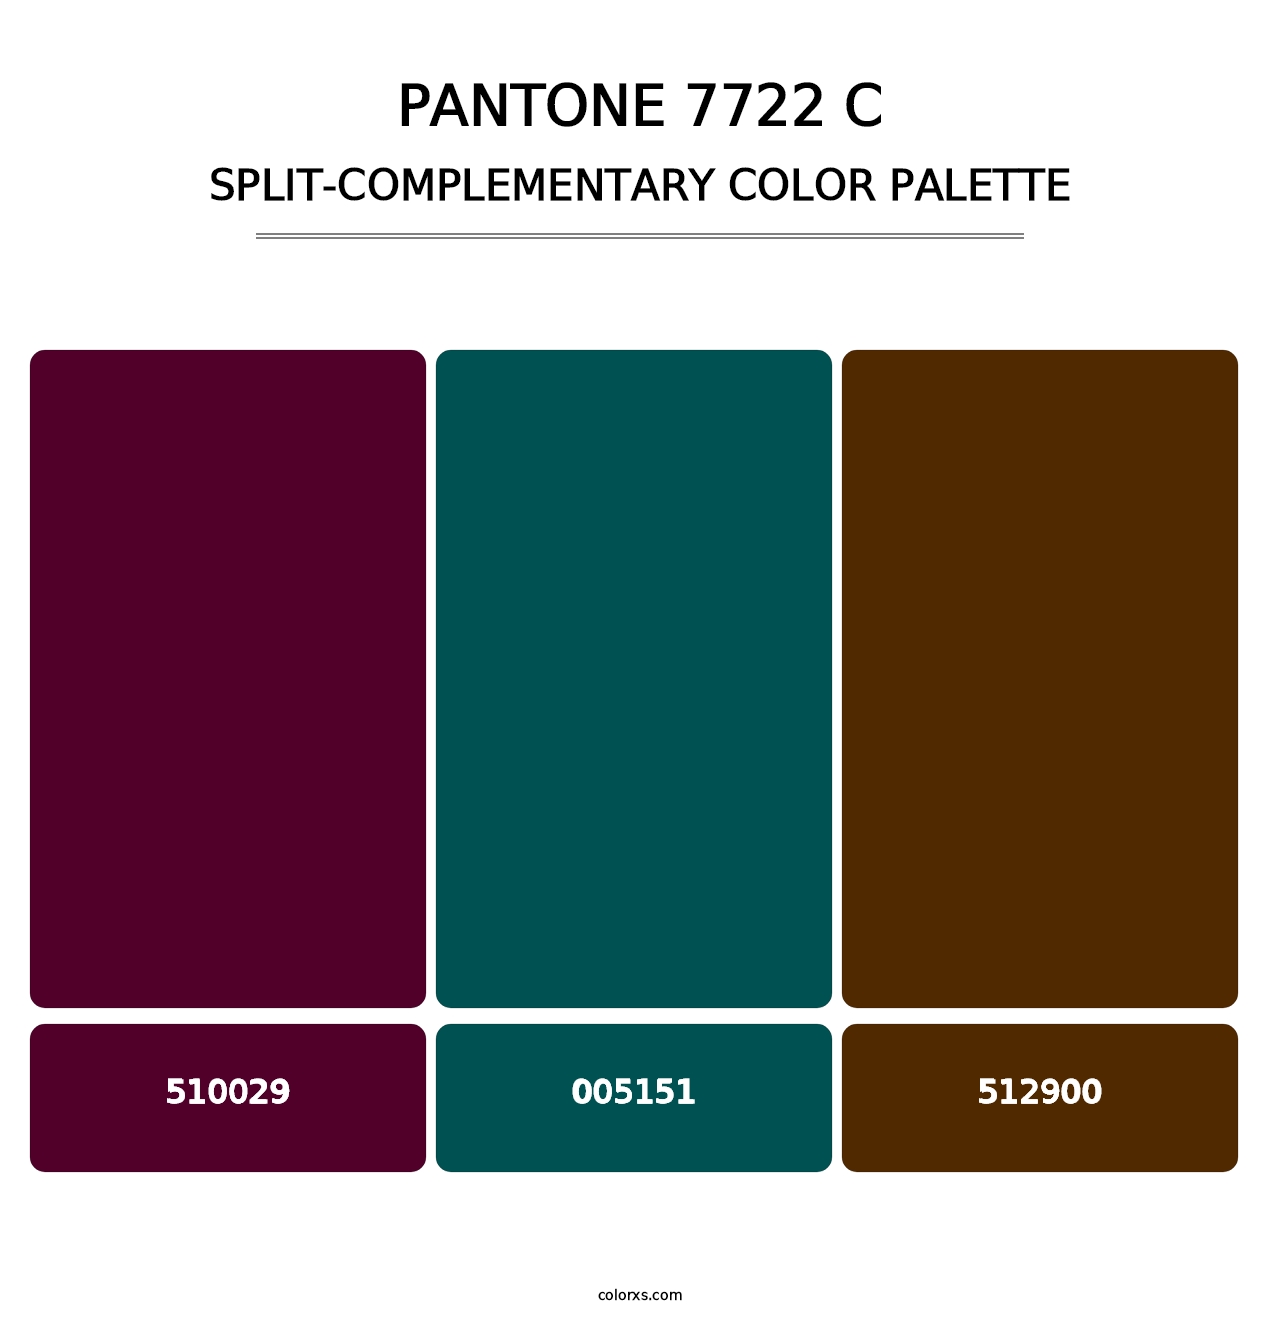 PANTONE 7722 C - Split-Complementary Color Palette